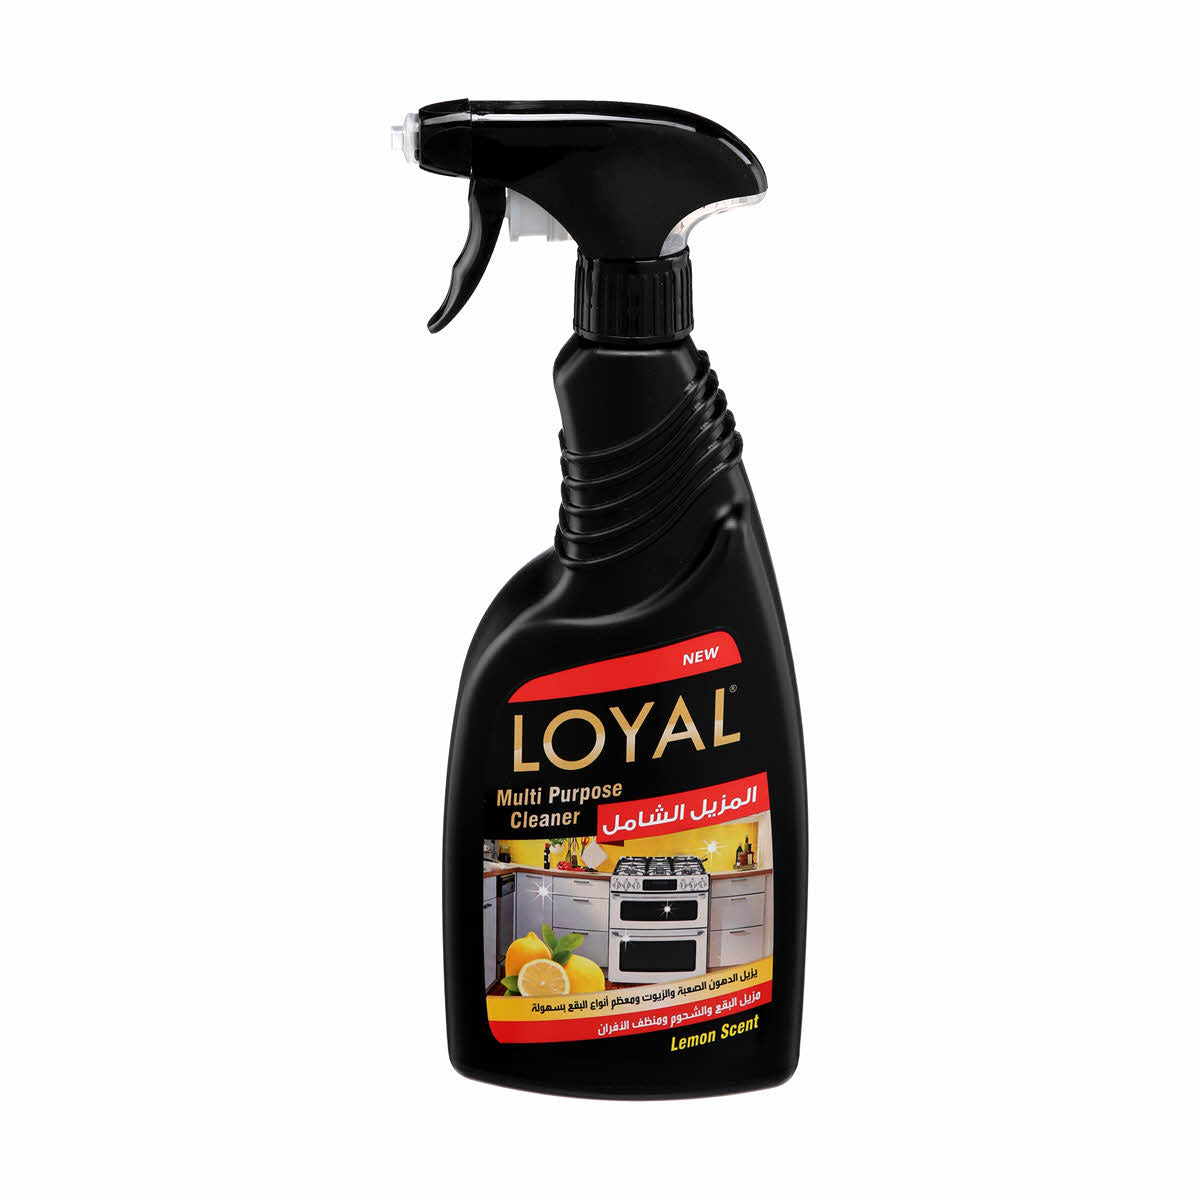 Loyal Multi-Purpose Cleaner